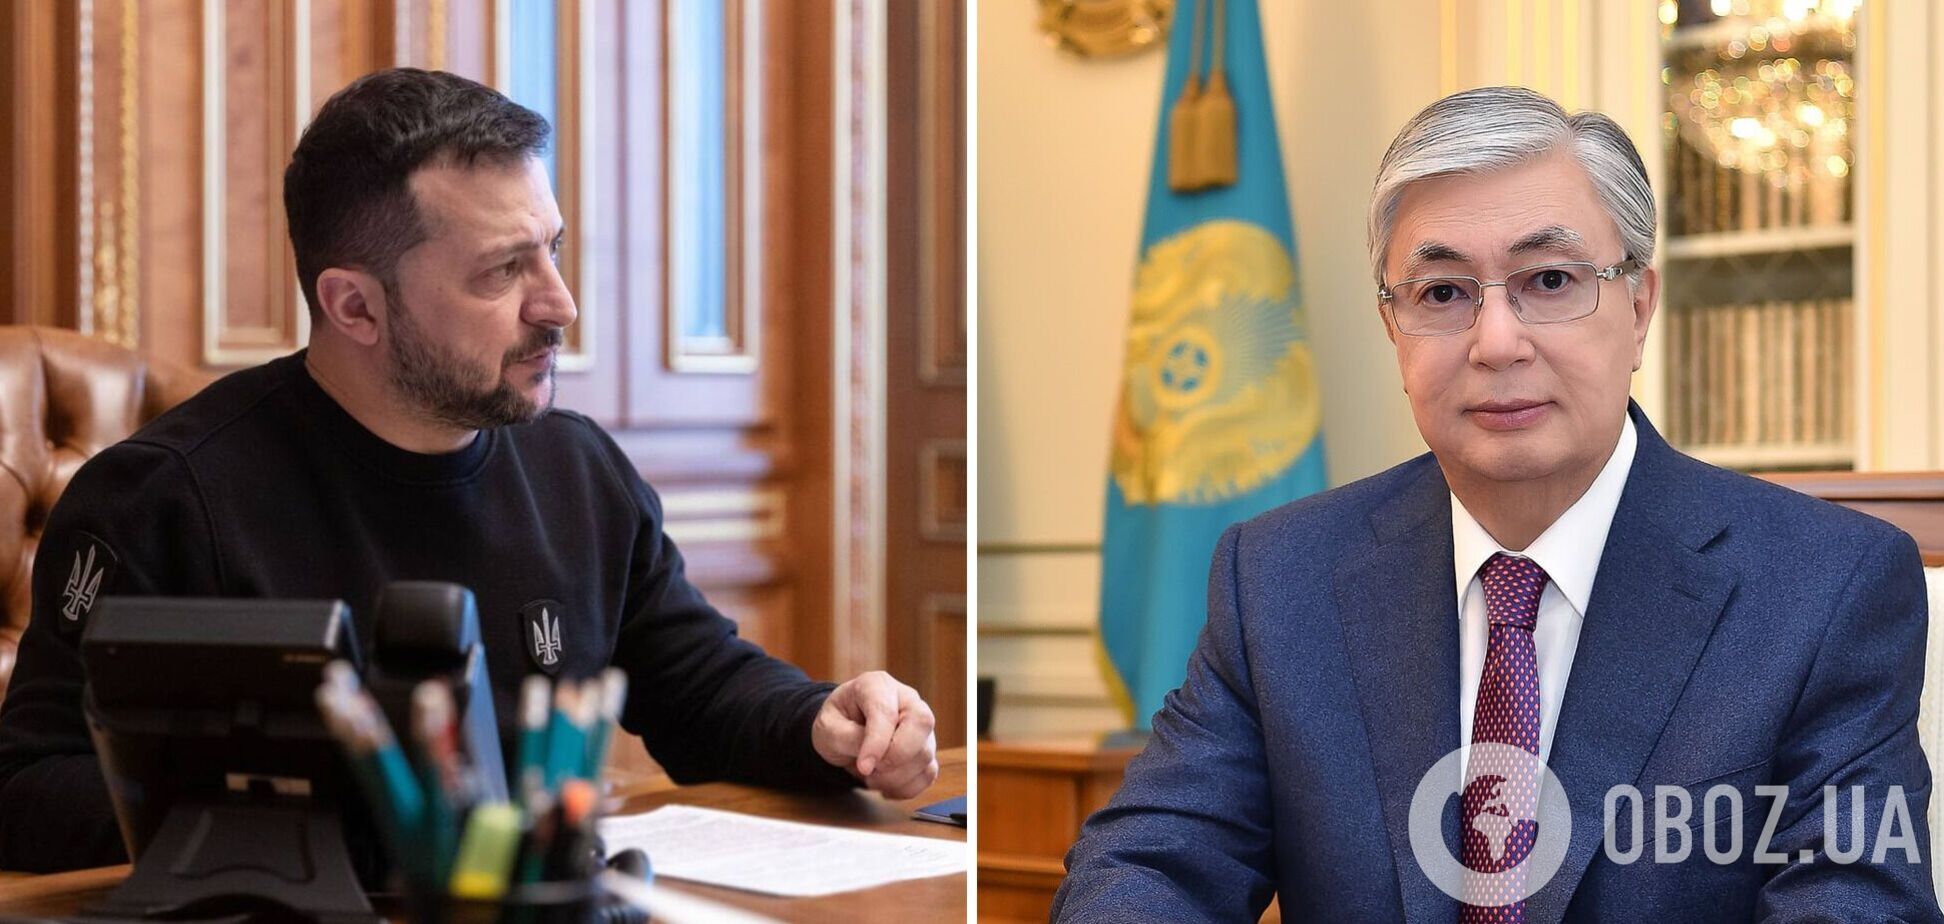 Говорили о формуле мира и не только: Зеленский провел переговоры с президентом Казахстана